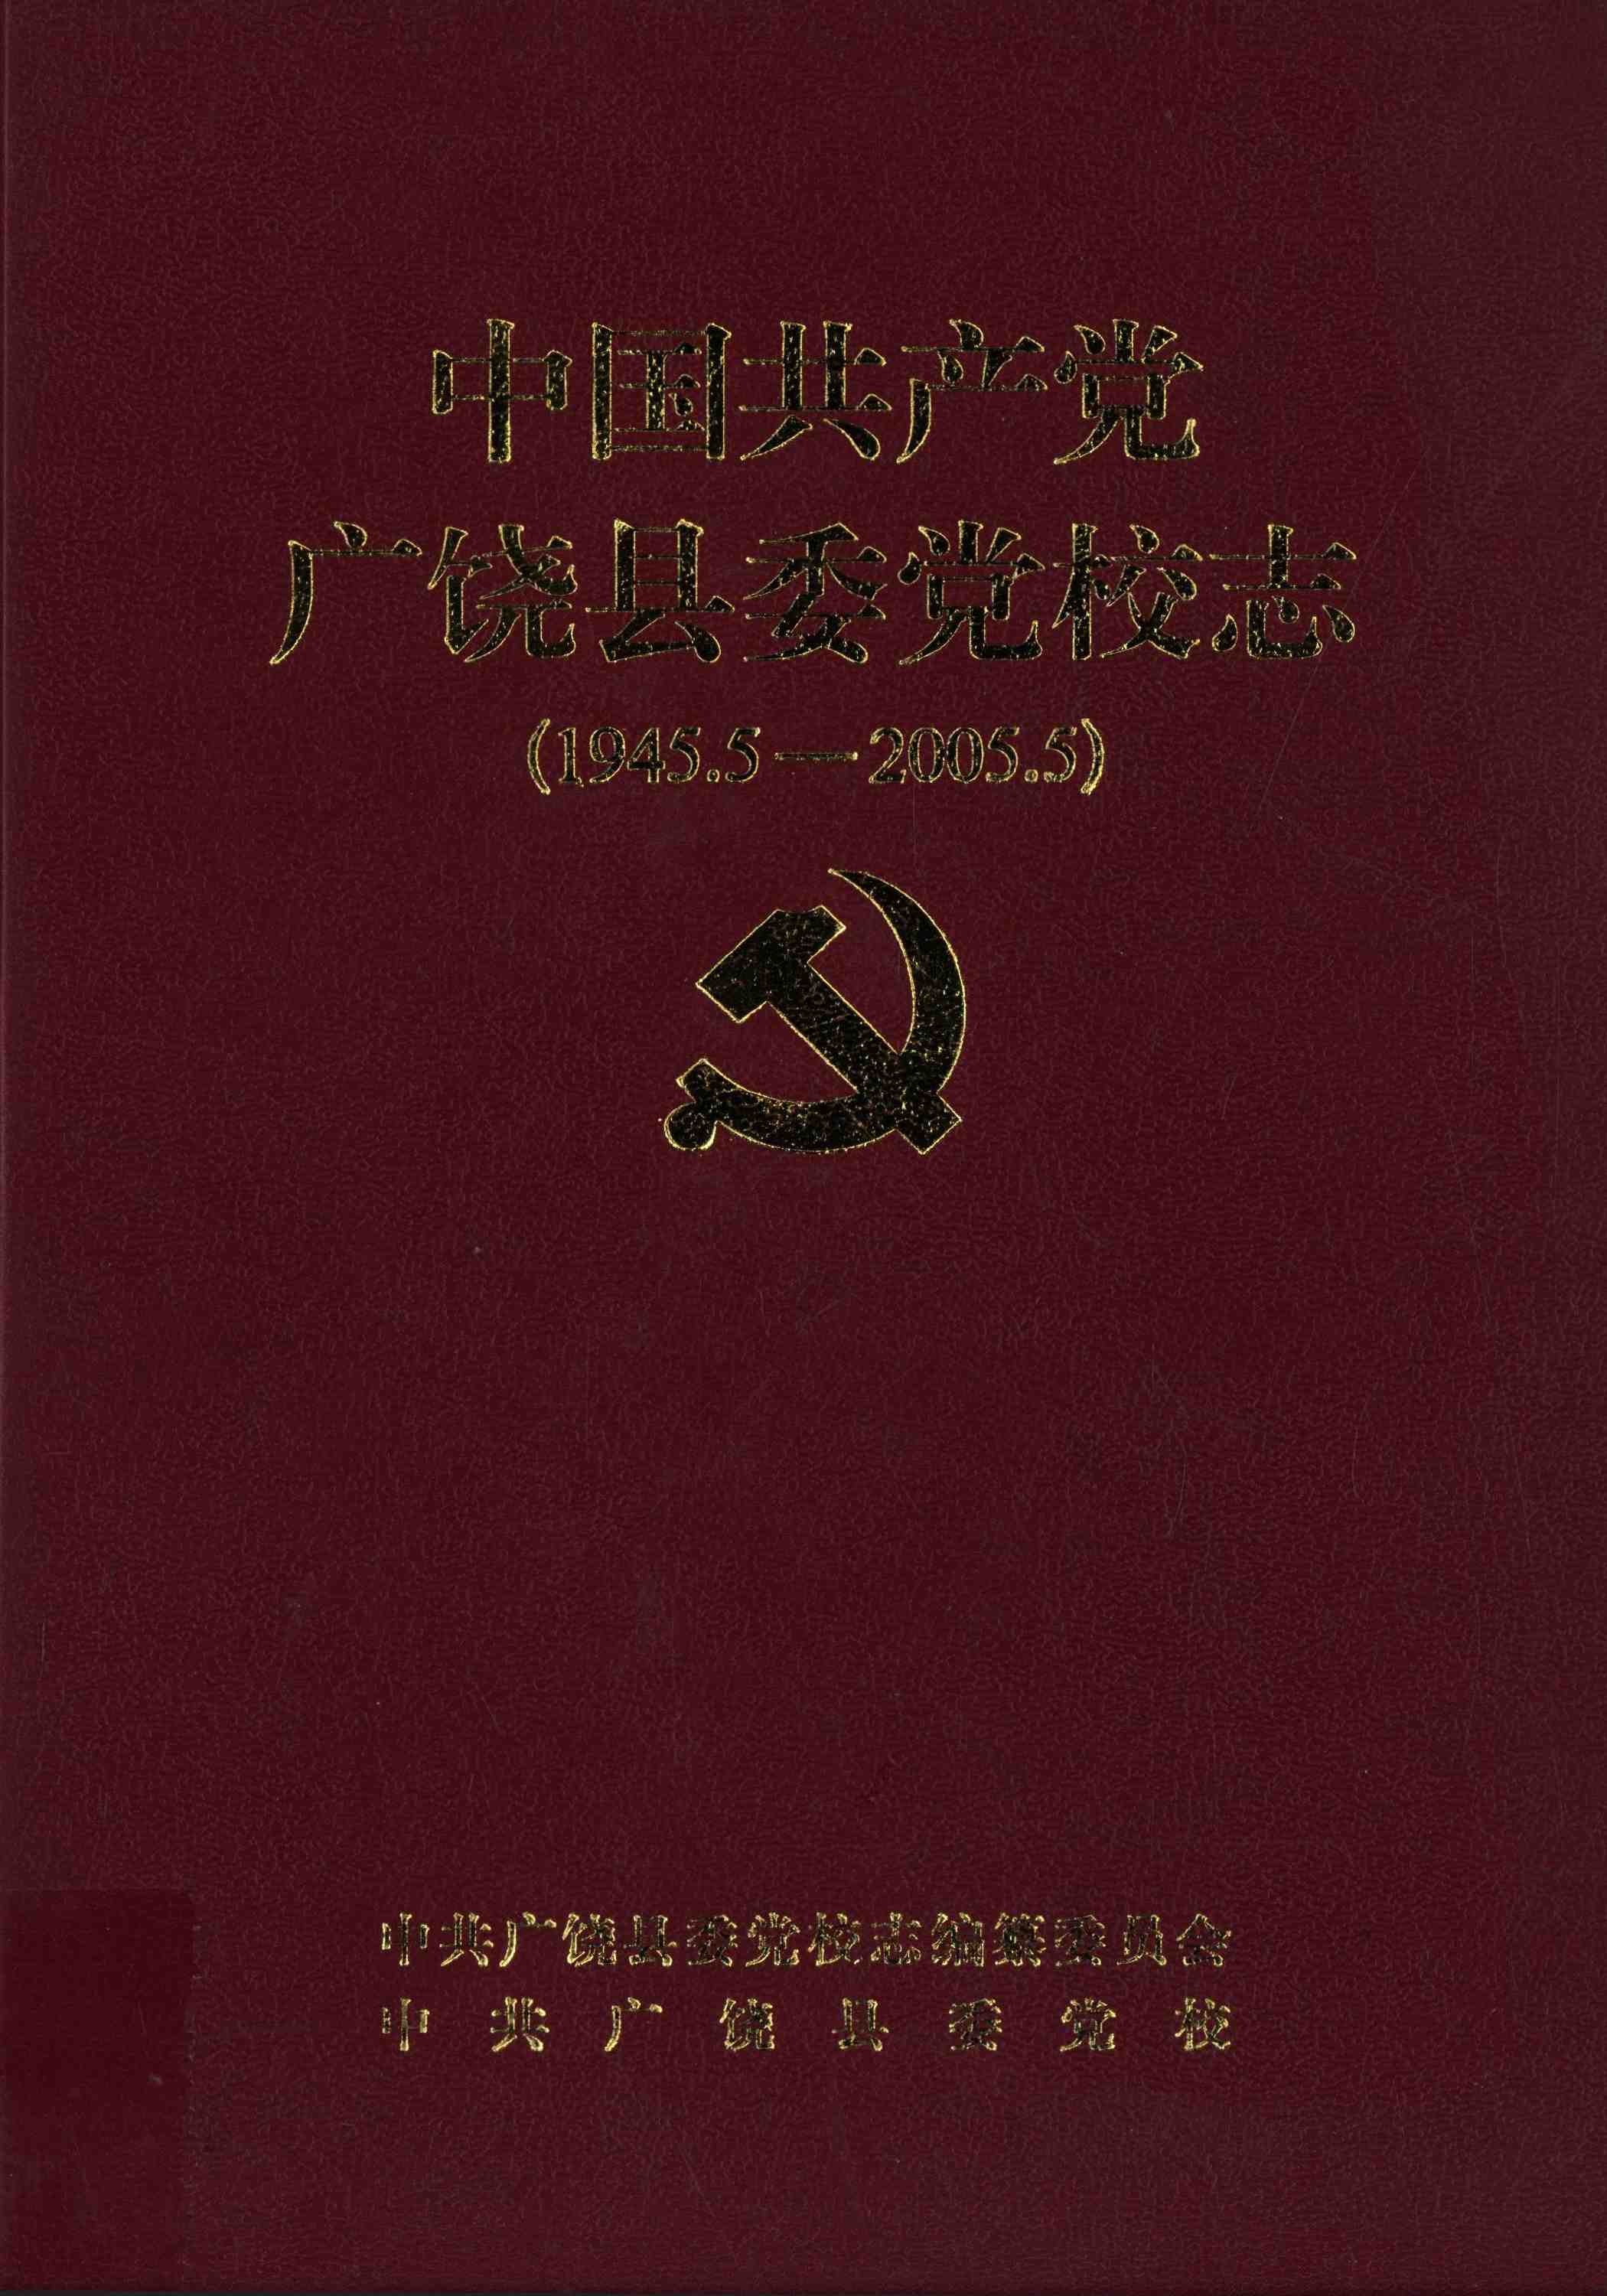 中国共产党广饶县党校志（1945.5-2005.5）